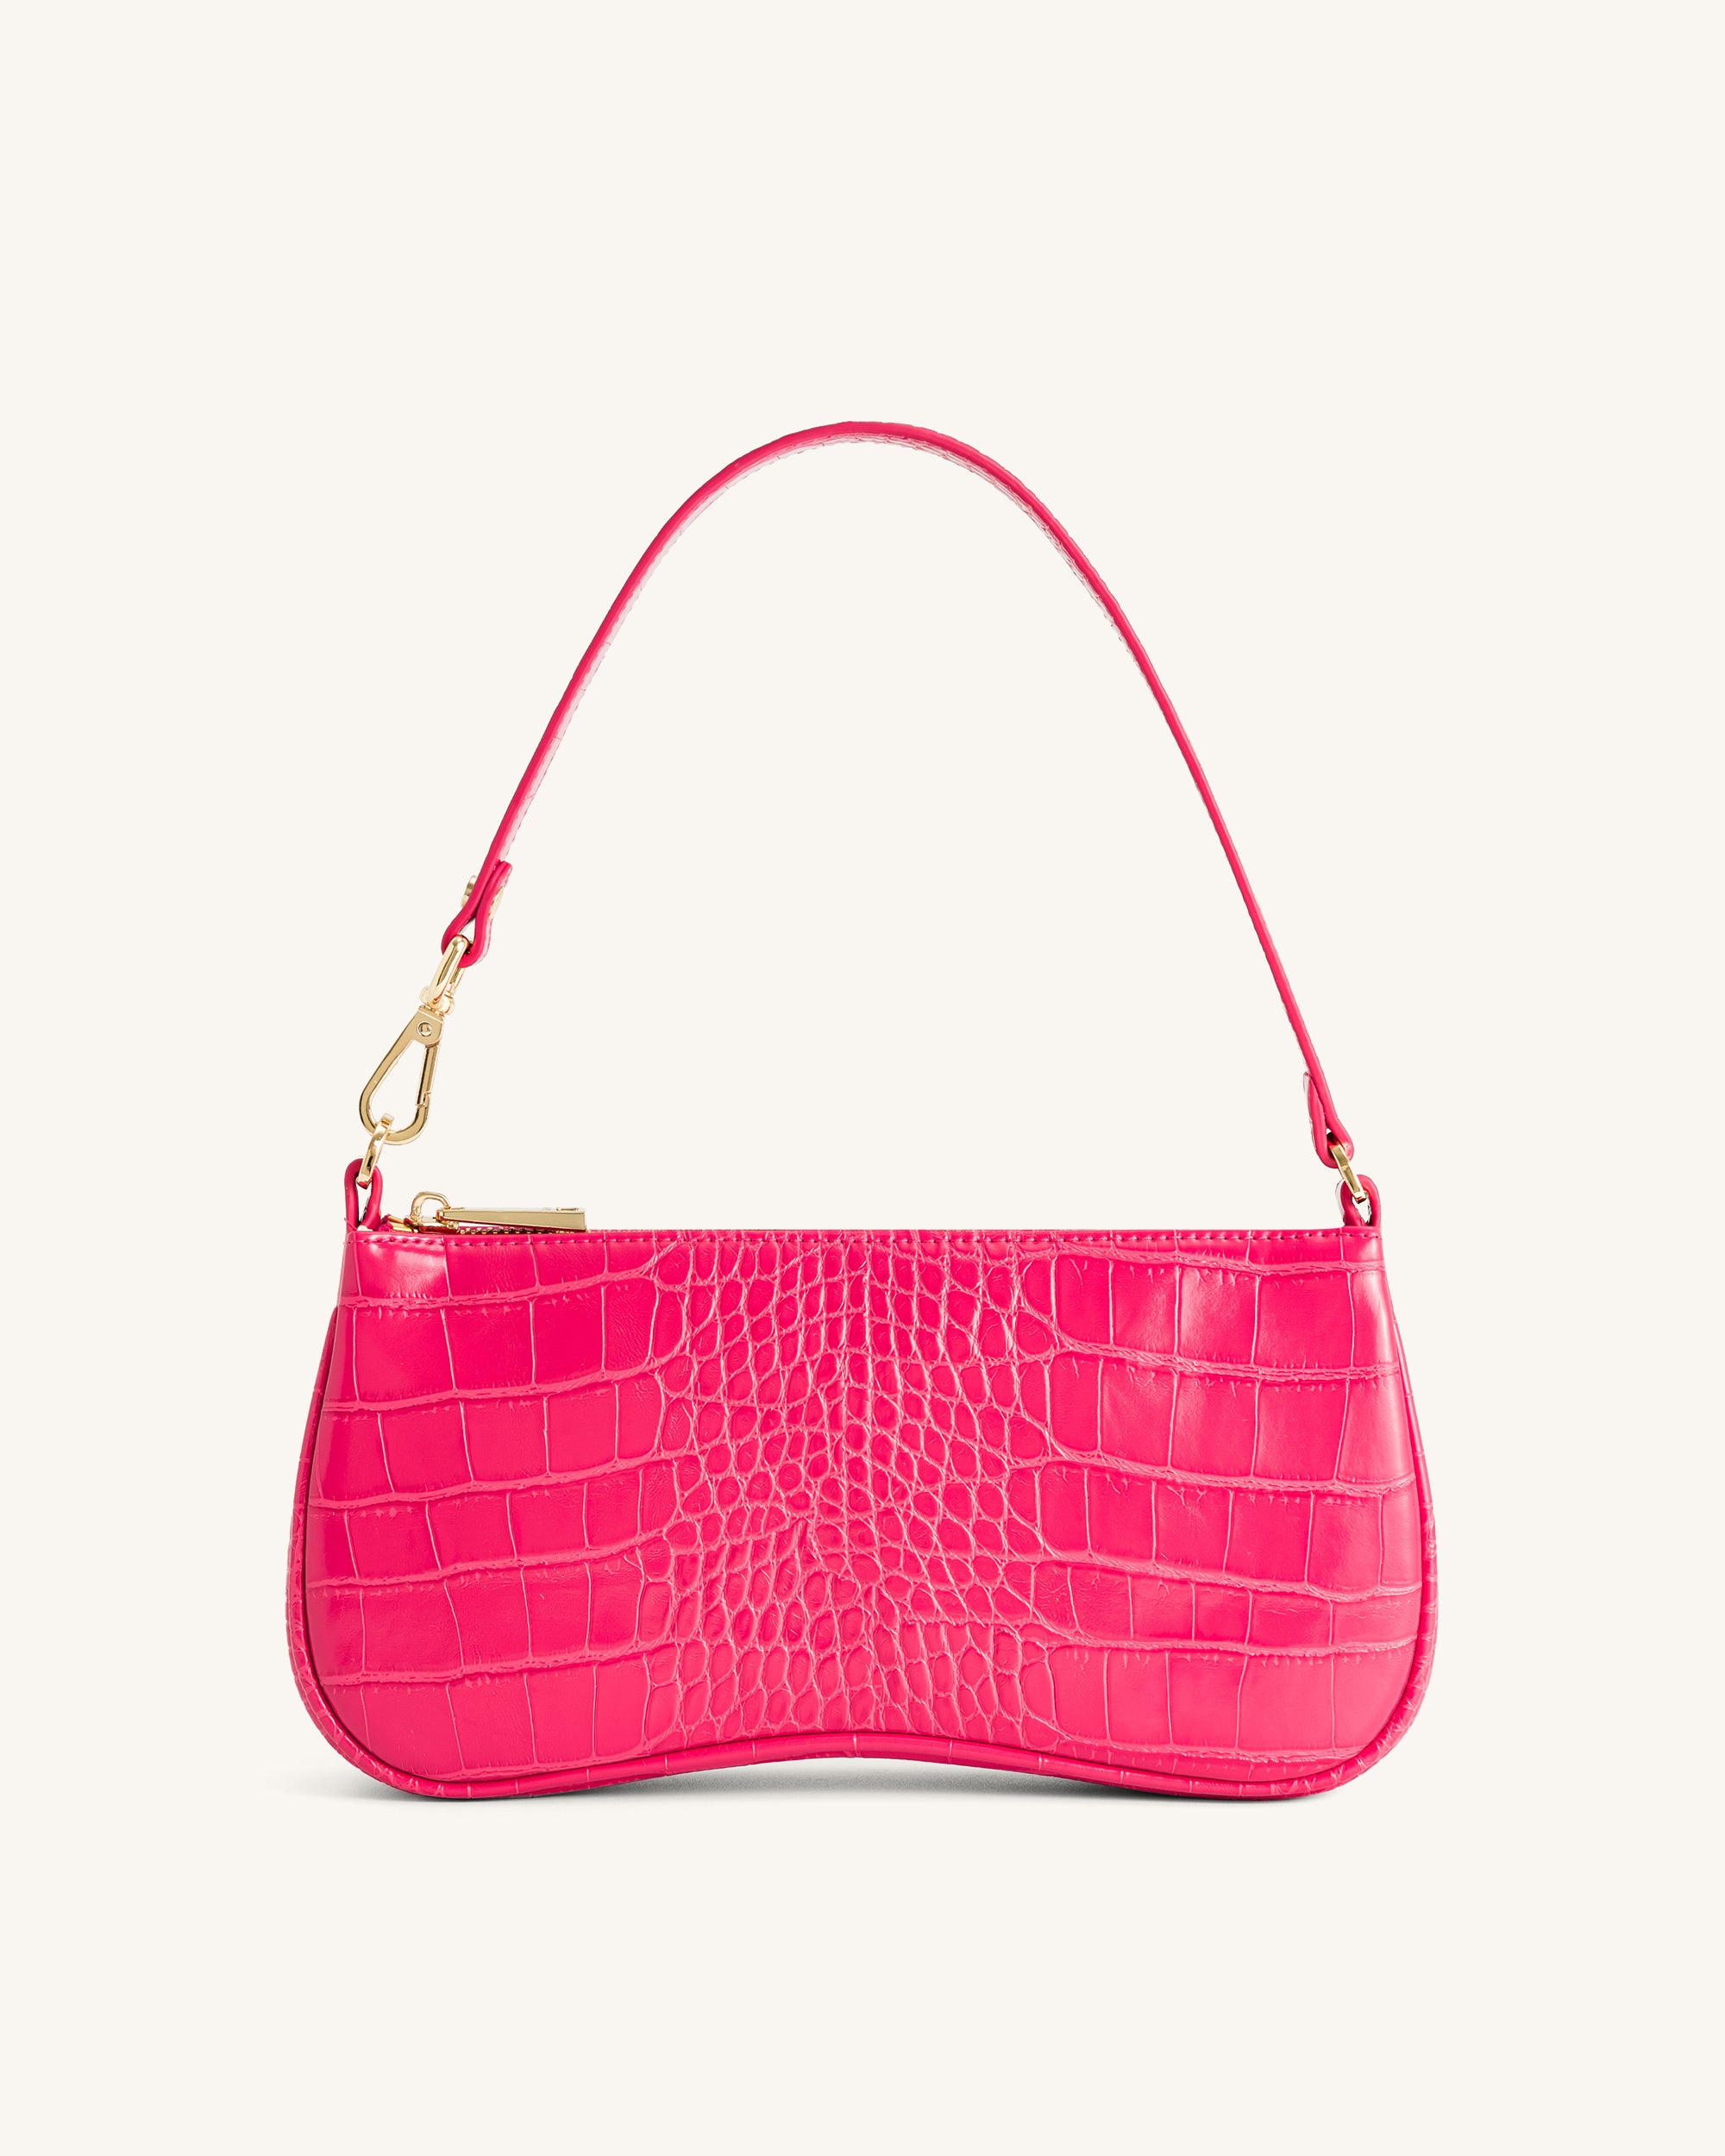 JW PEI Eva Shoulder Bag  Bags, Fashion designer handbags, Chanel handbags  red